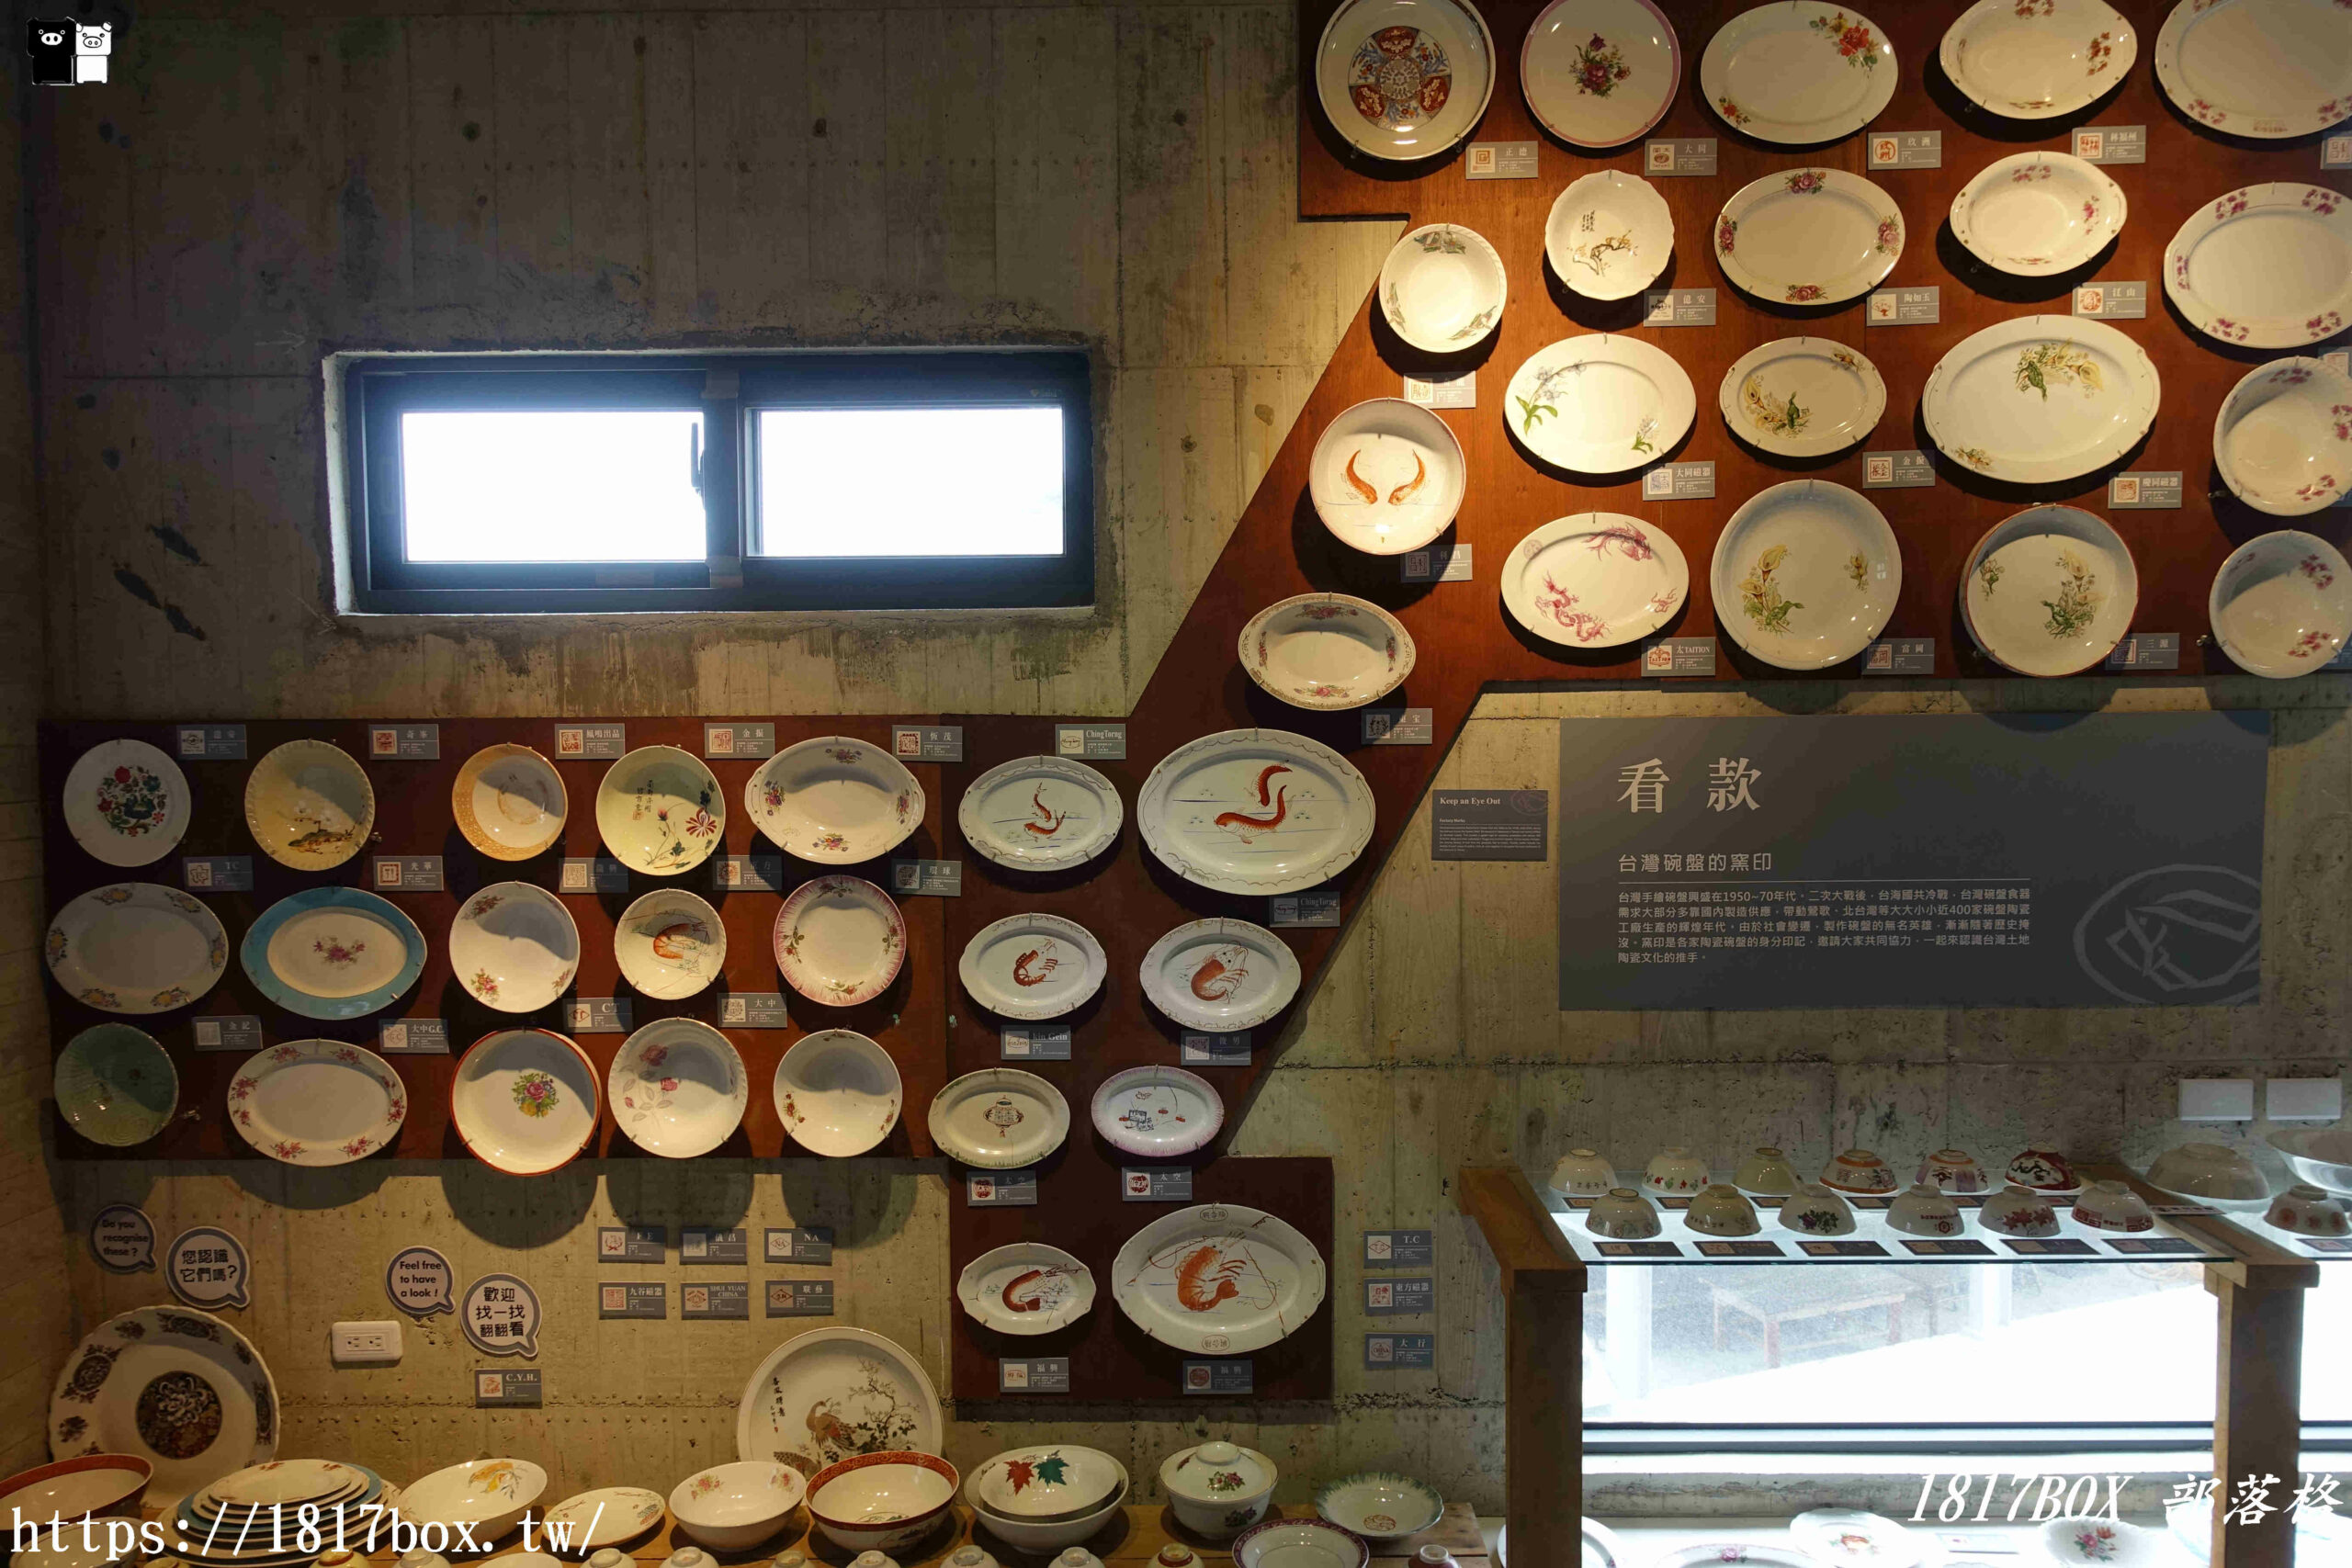 【宜蘭。五結】巨人用的盤子出現在宜蘭。台灣碗盤博物館。展出藝術品3萬多件。獨一無二的碗盤主題博物館